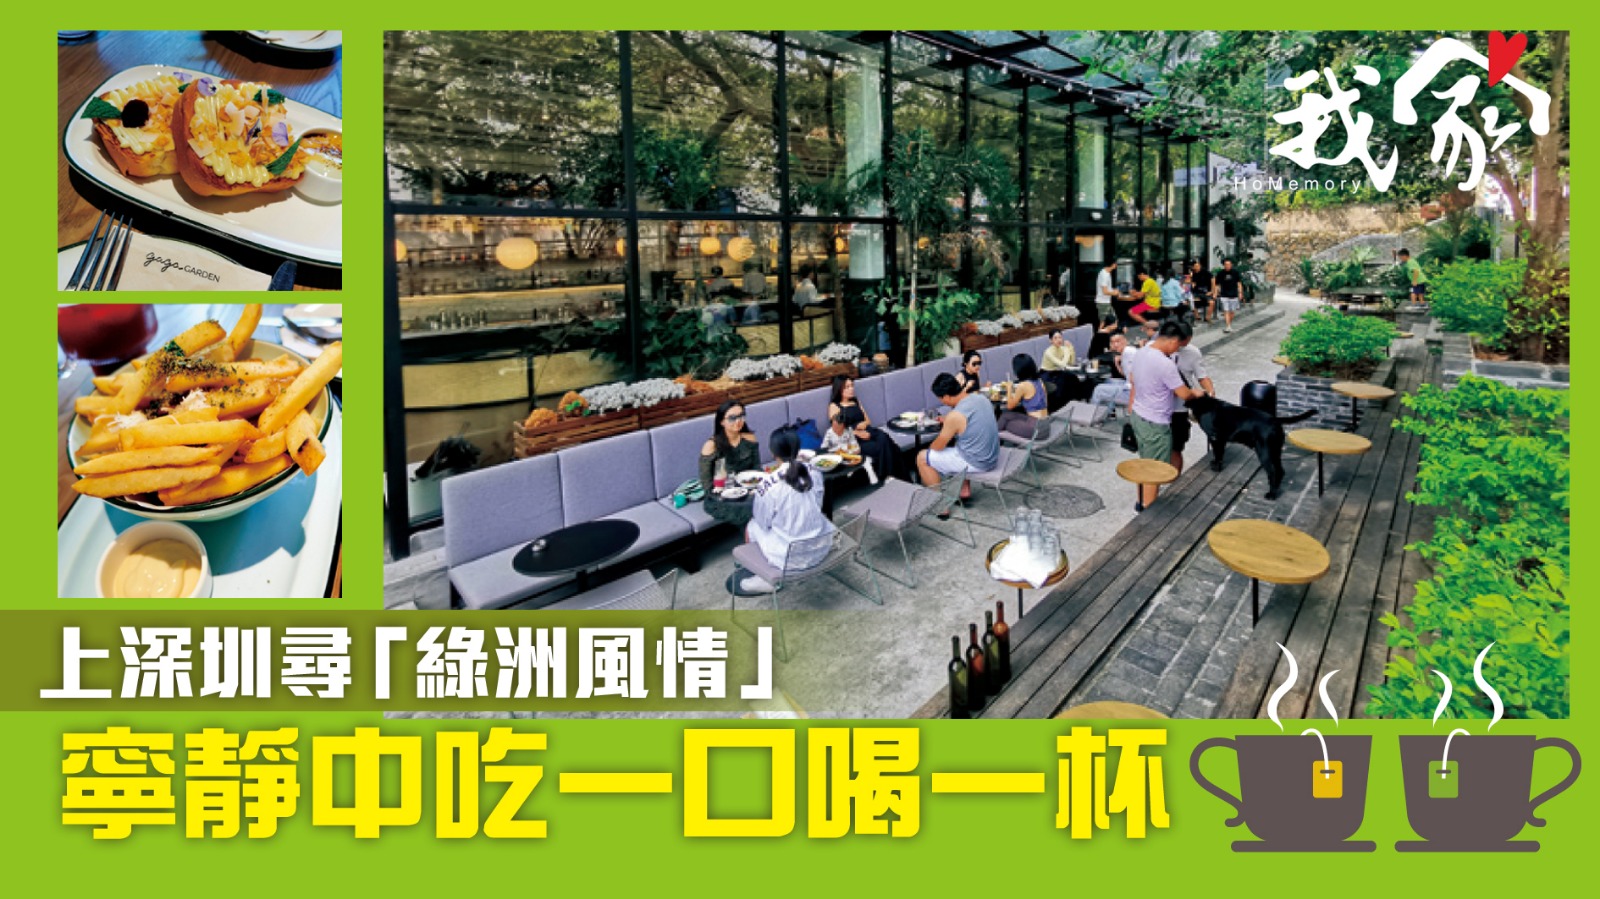 上深圳尋「綠洲風情」 寧靜中吃一口喝一杯